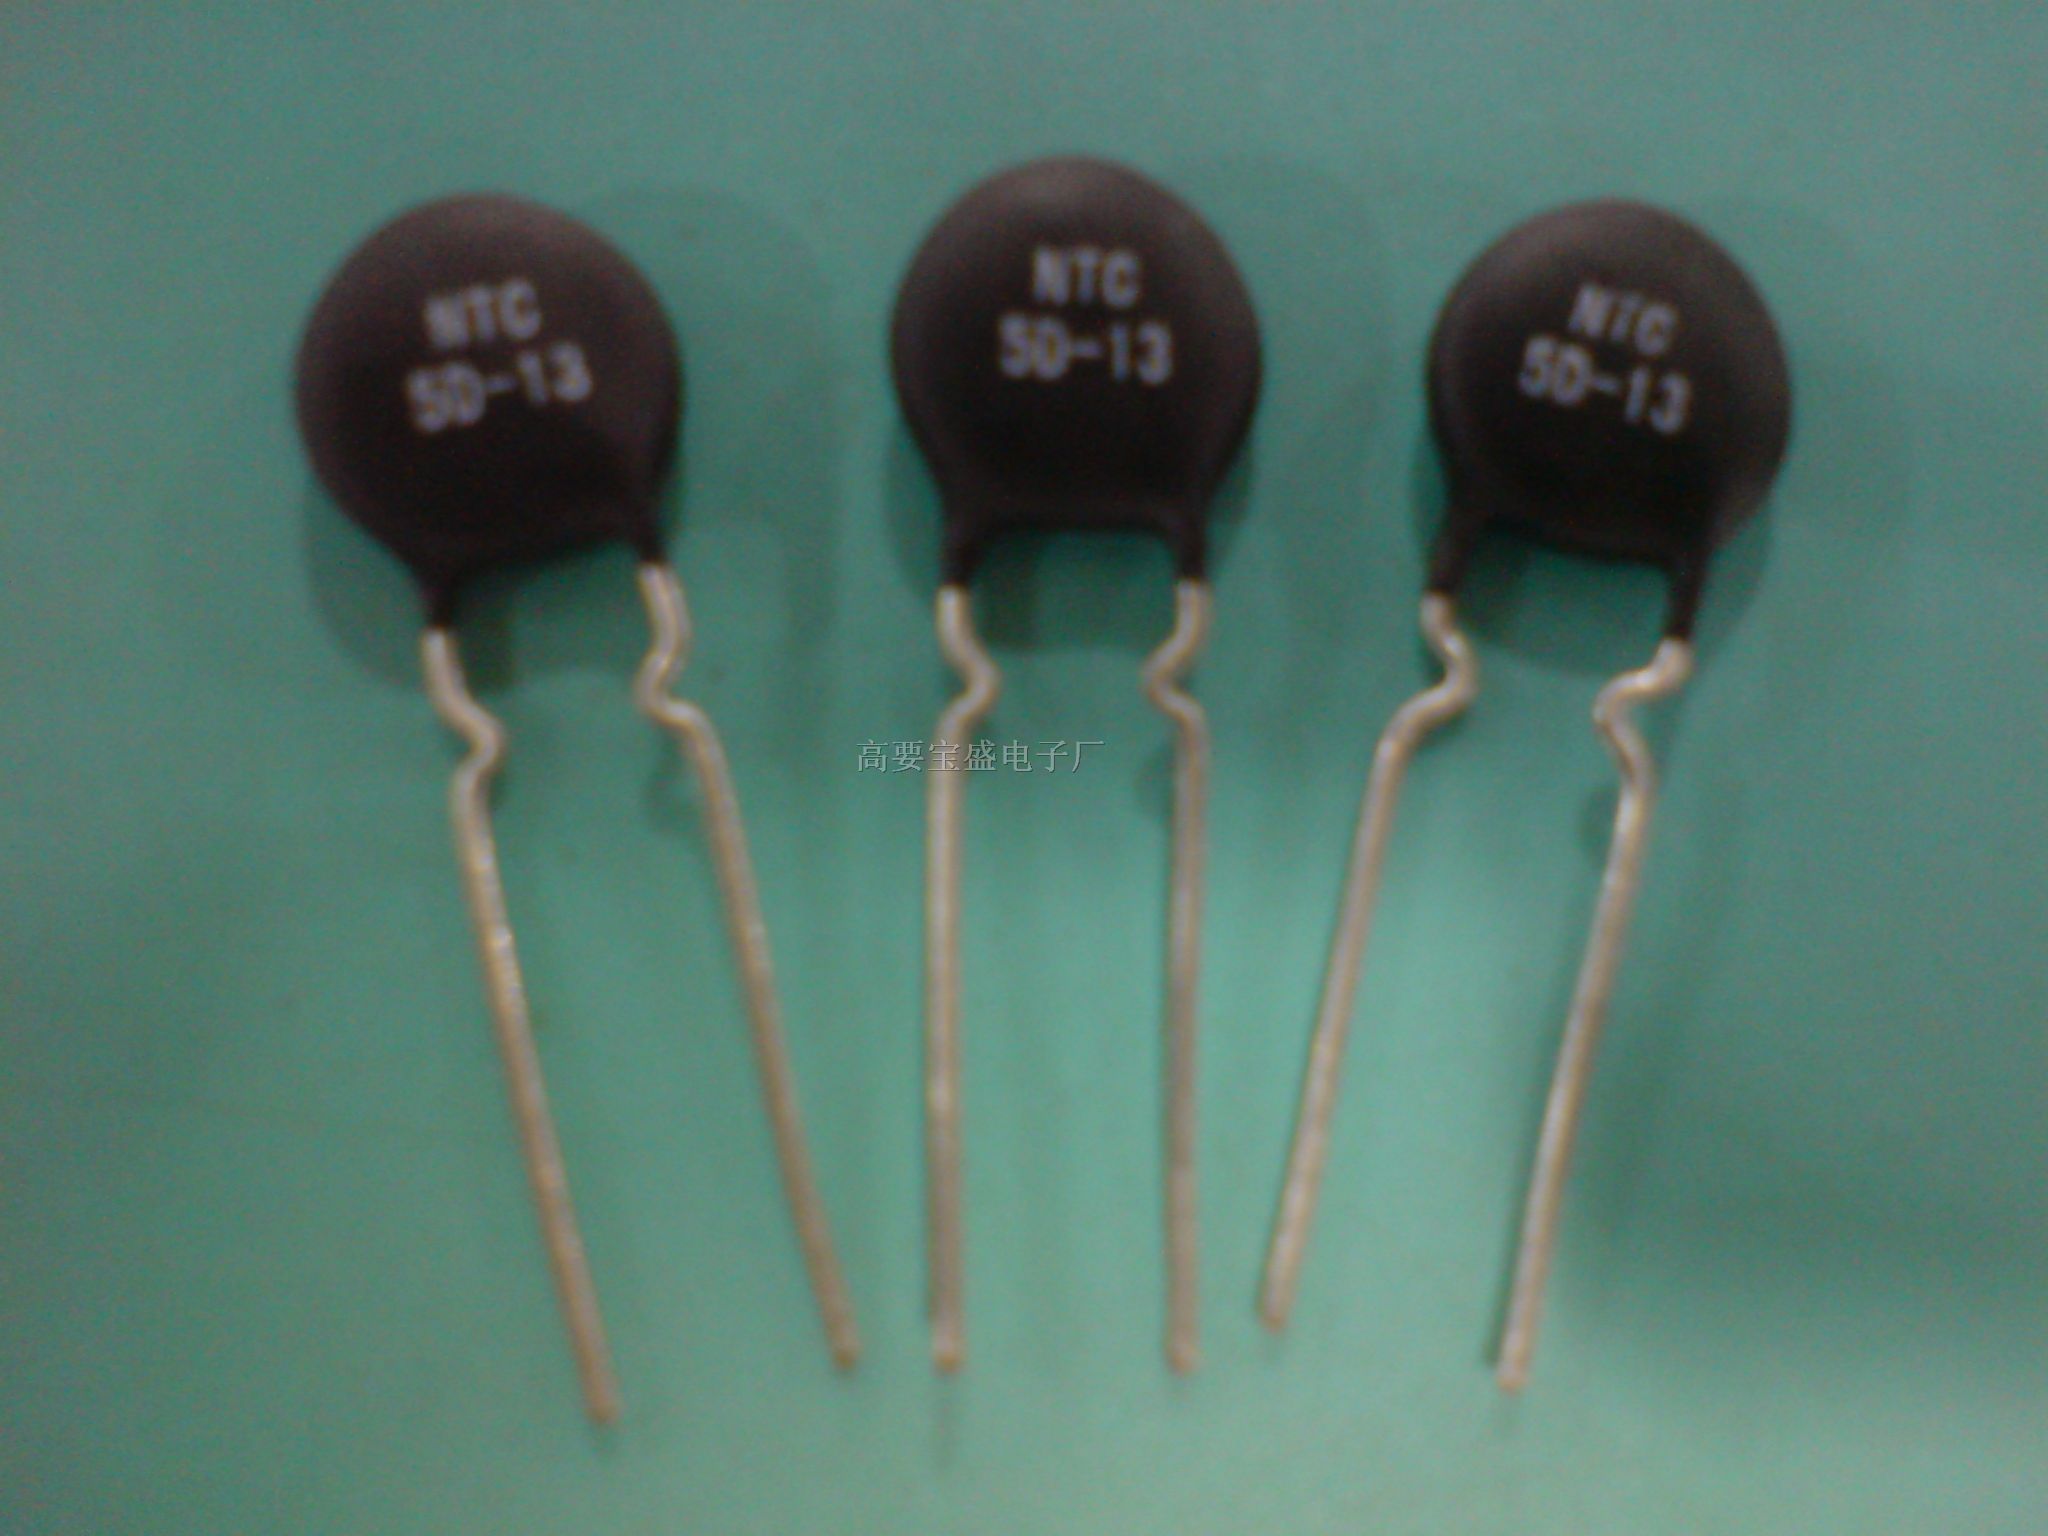 供应NTC热敏电阻5D-9 5D-20 47D-13  等各型号规格